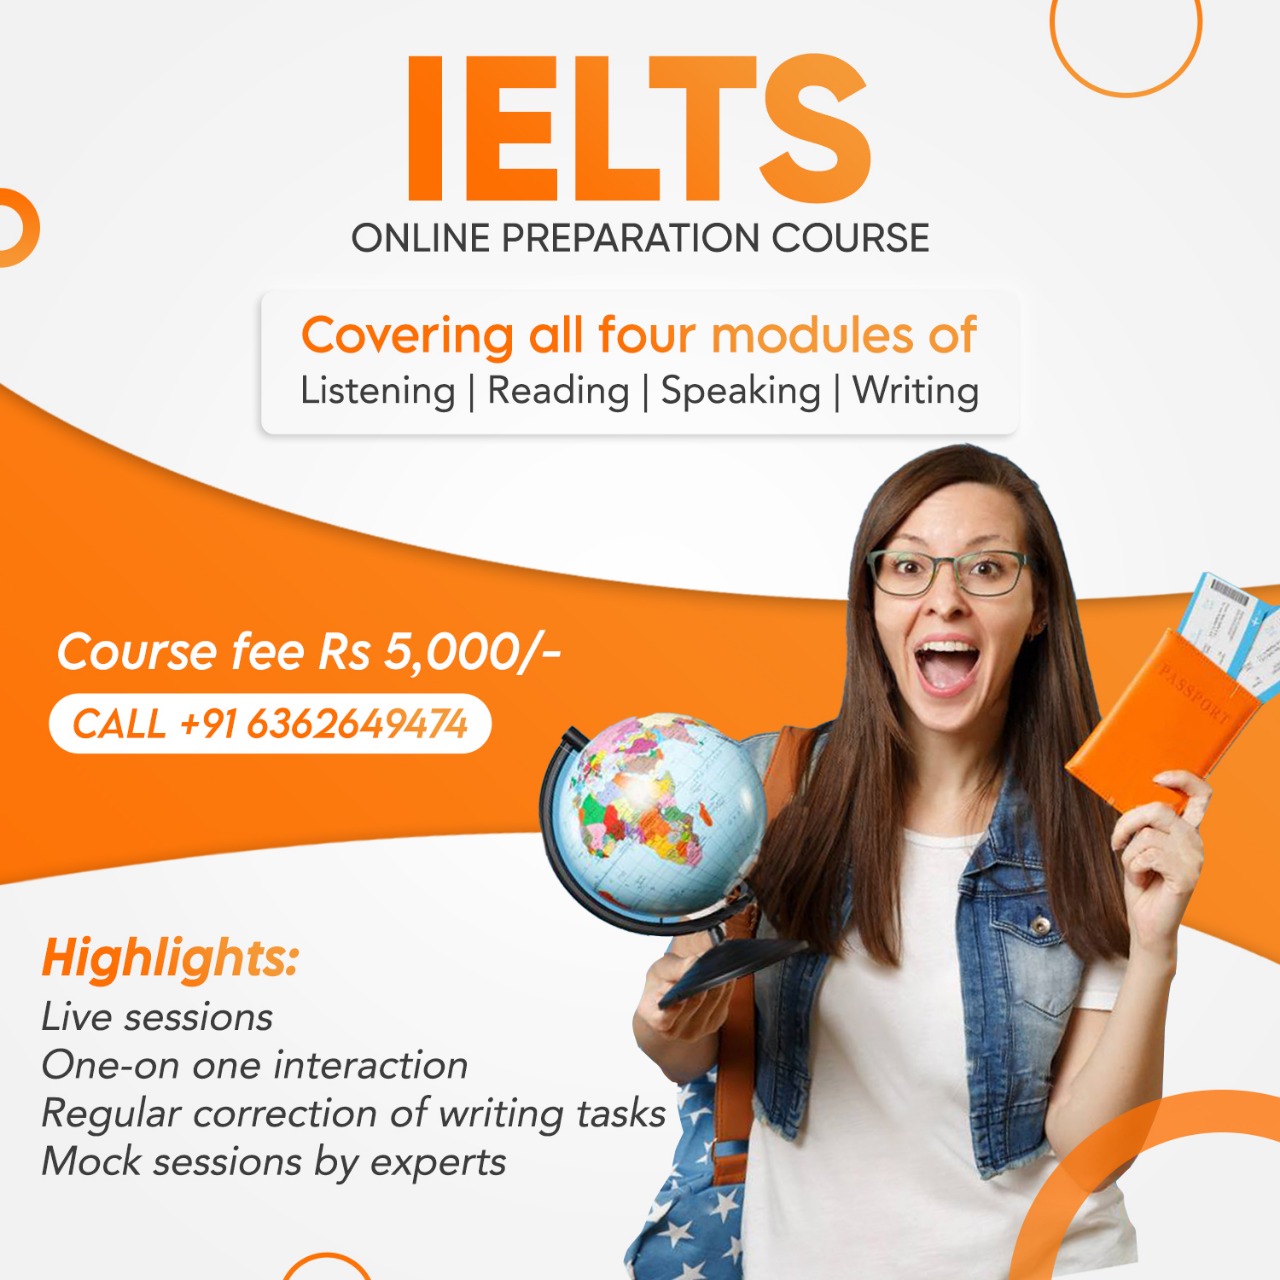 IELTS Online Preparation Course